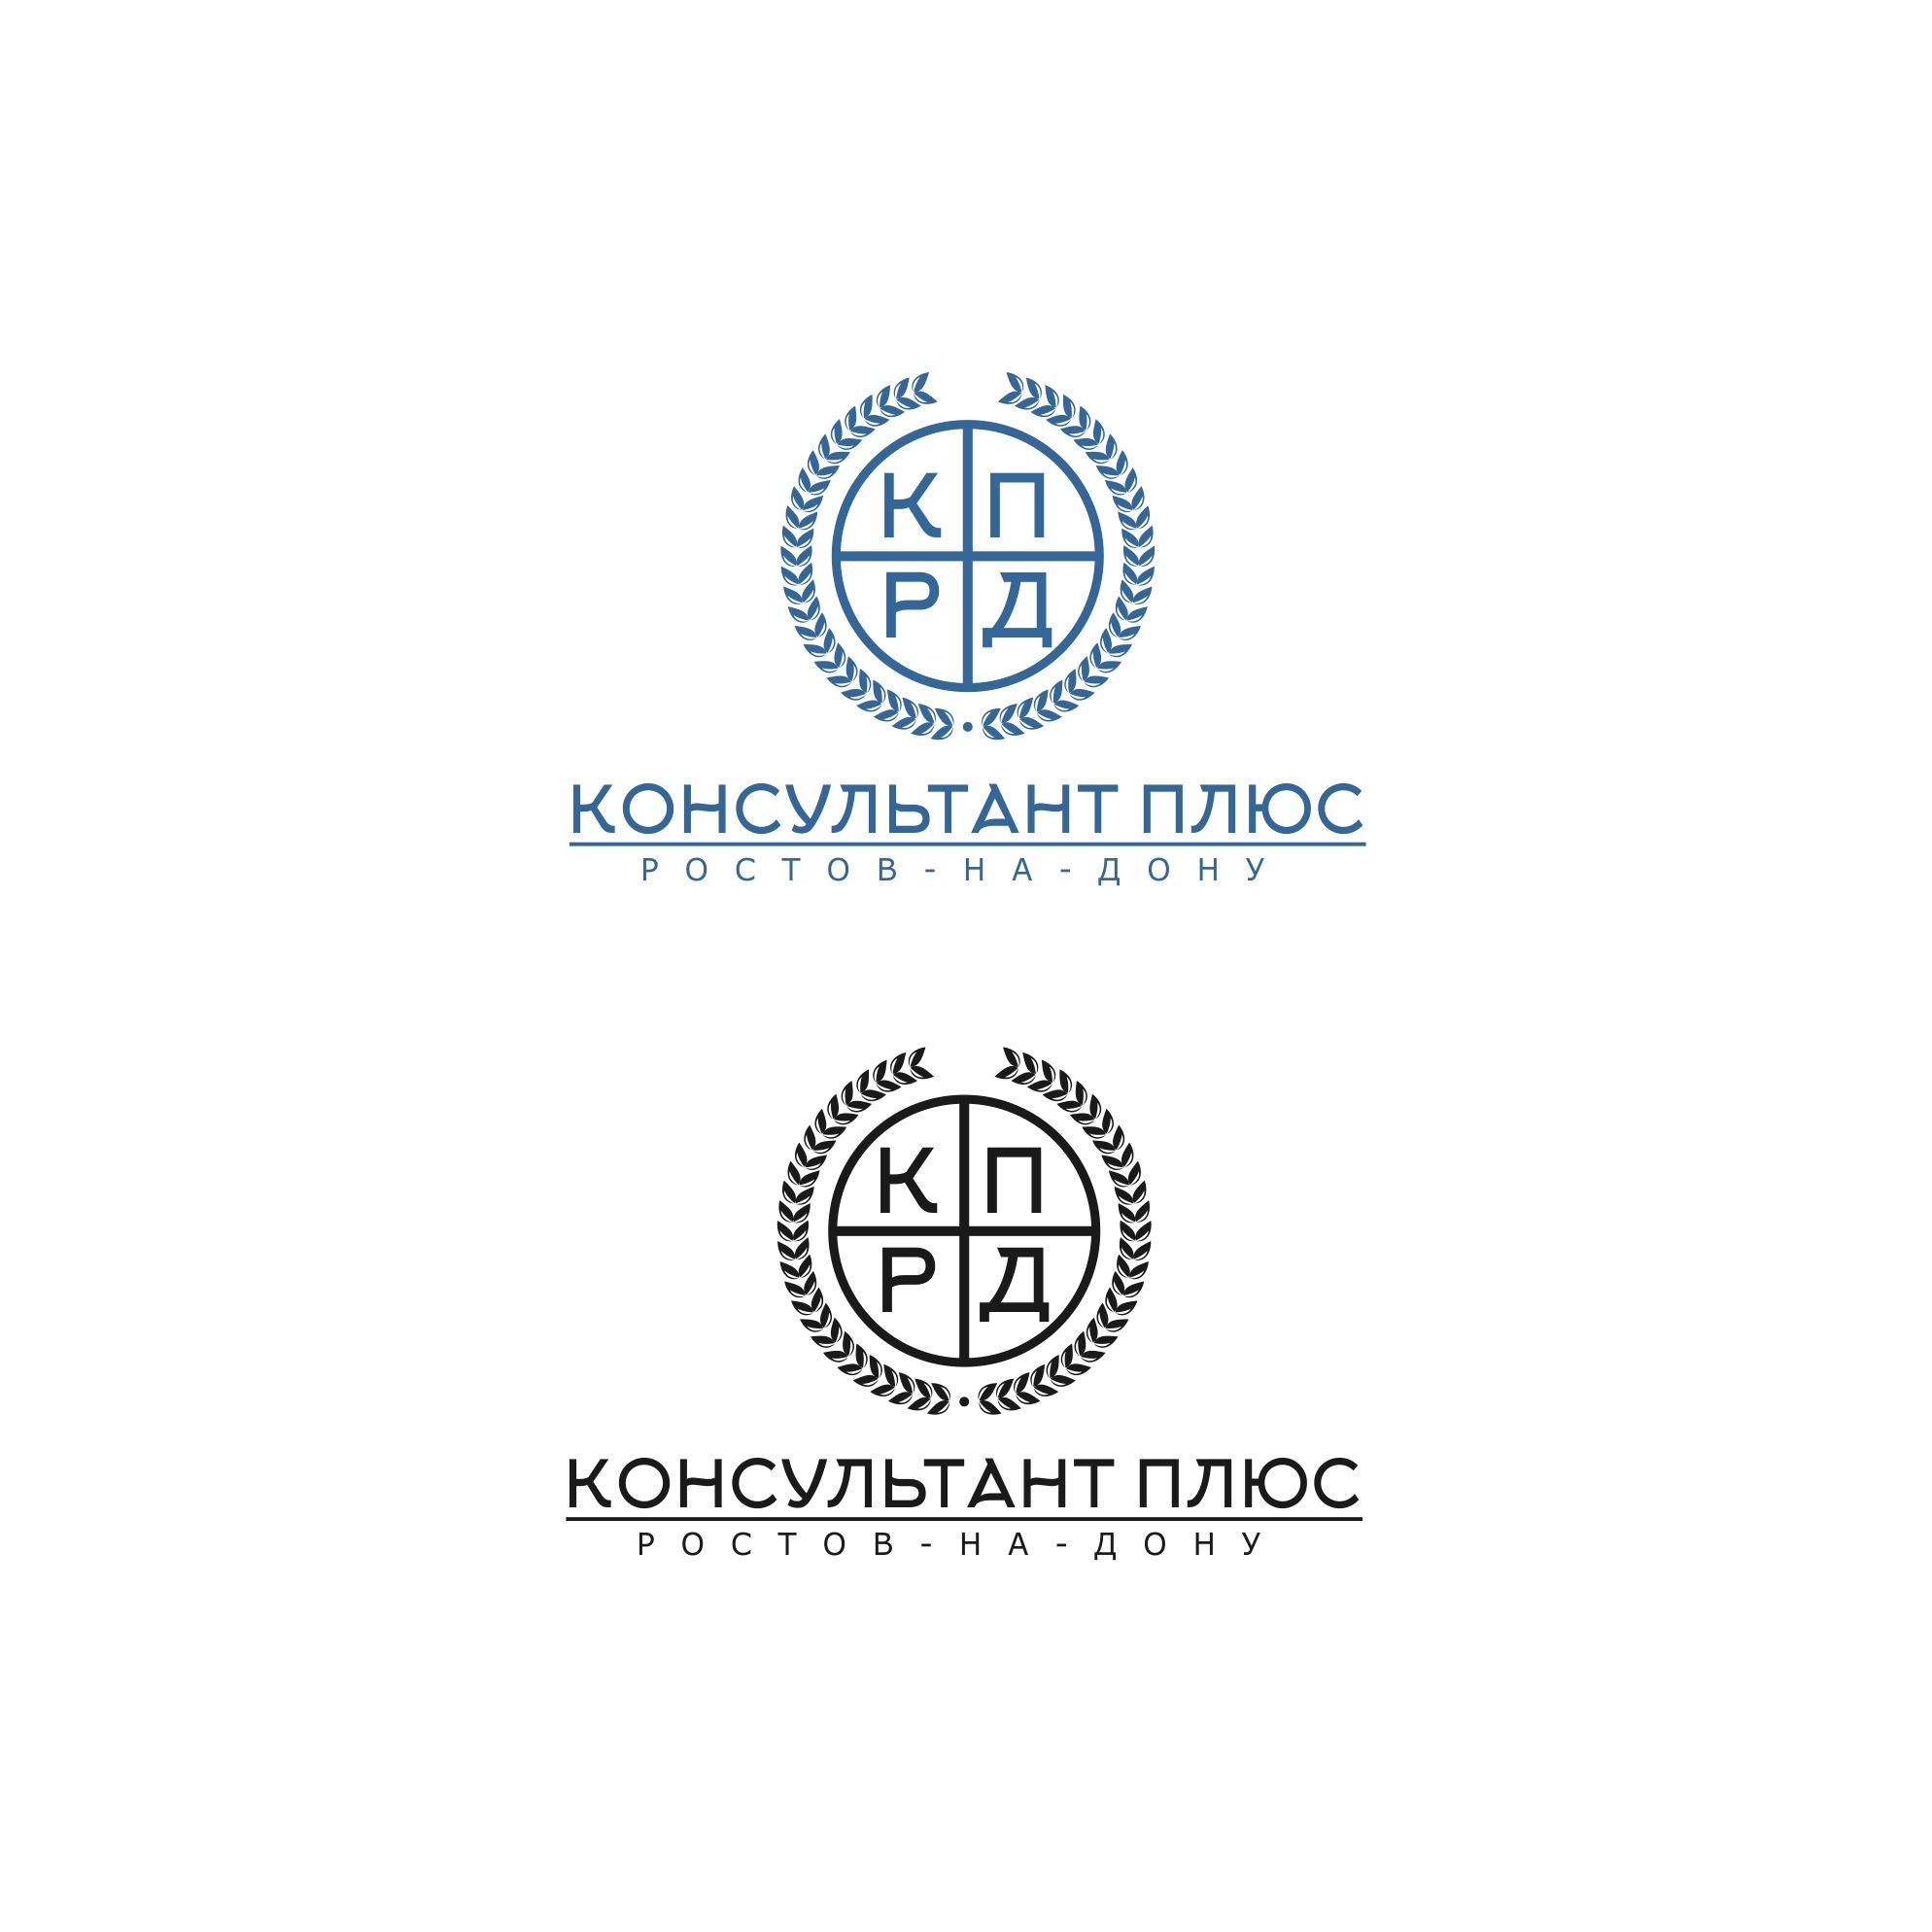 Лого и фирменный стиль для КонсультантПлюс-Ростов-на-Дону - дизайнер serz4868